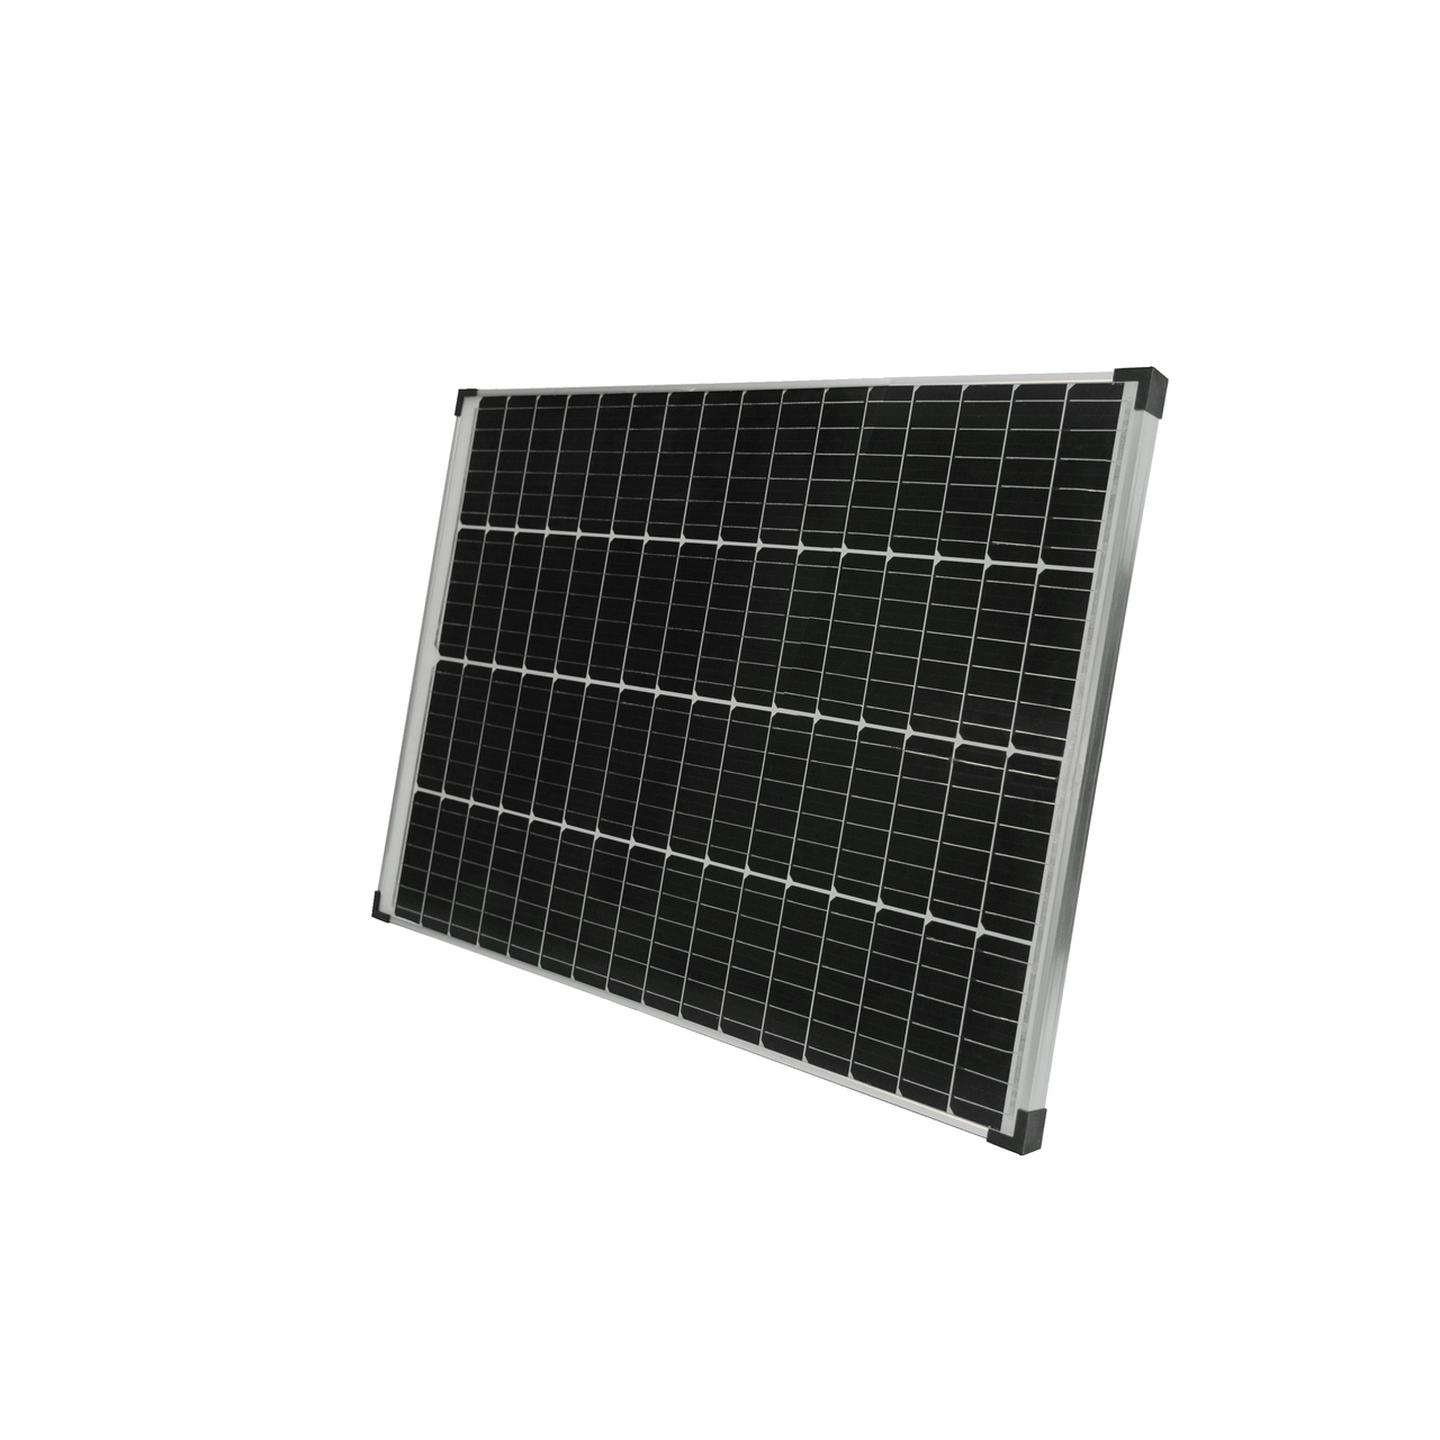 Rovin 12V 110W Monocrystalline Solar Panel